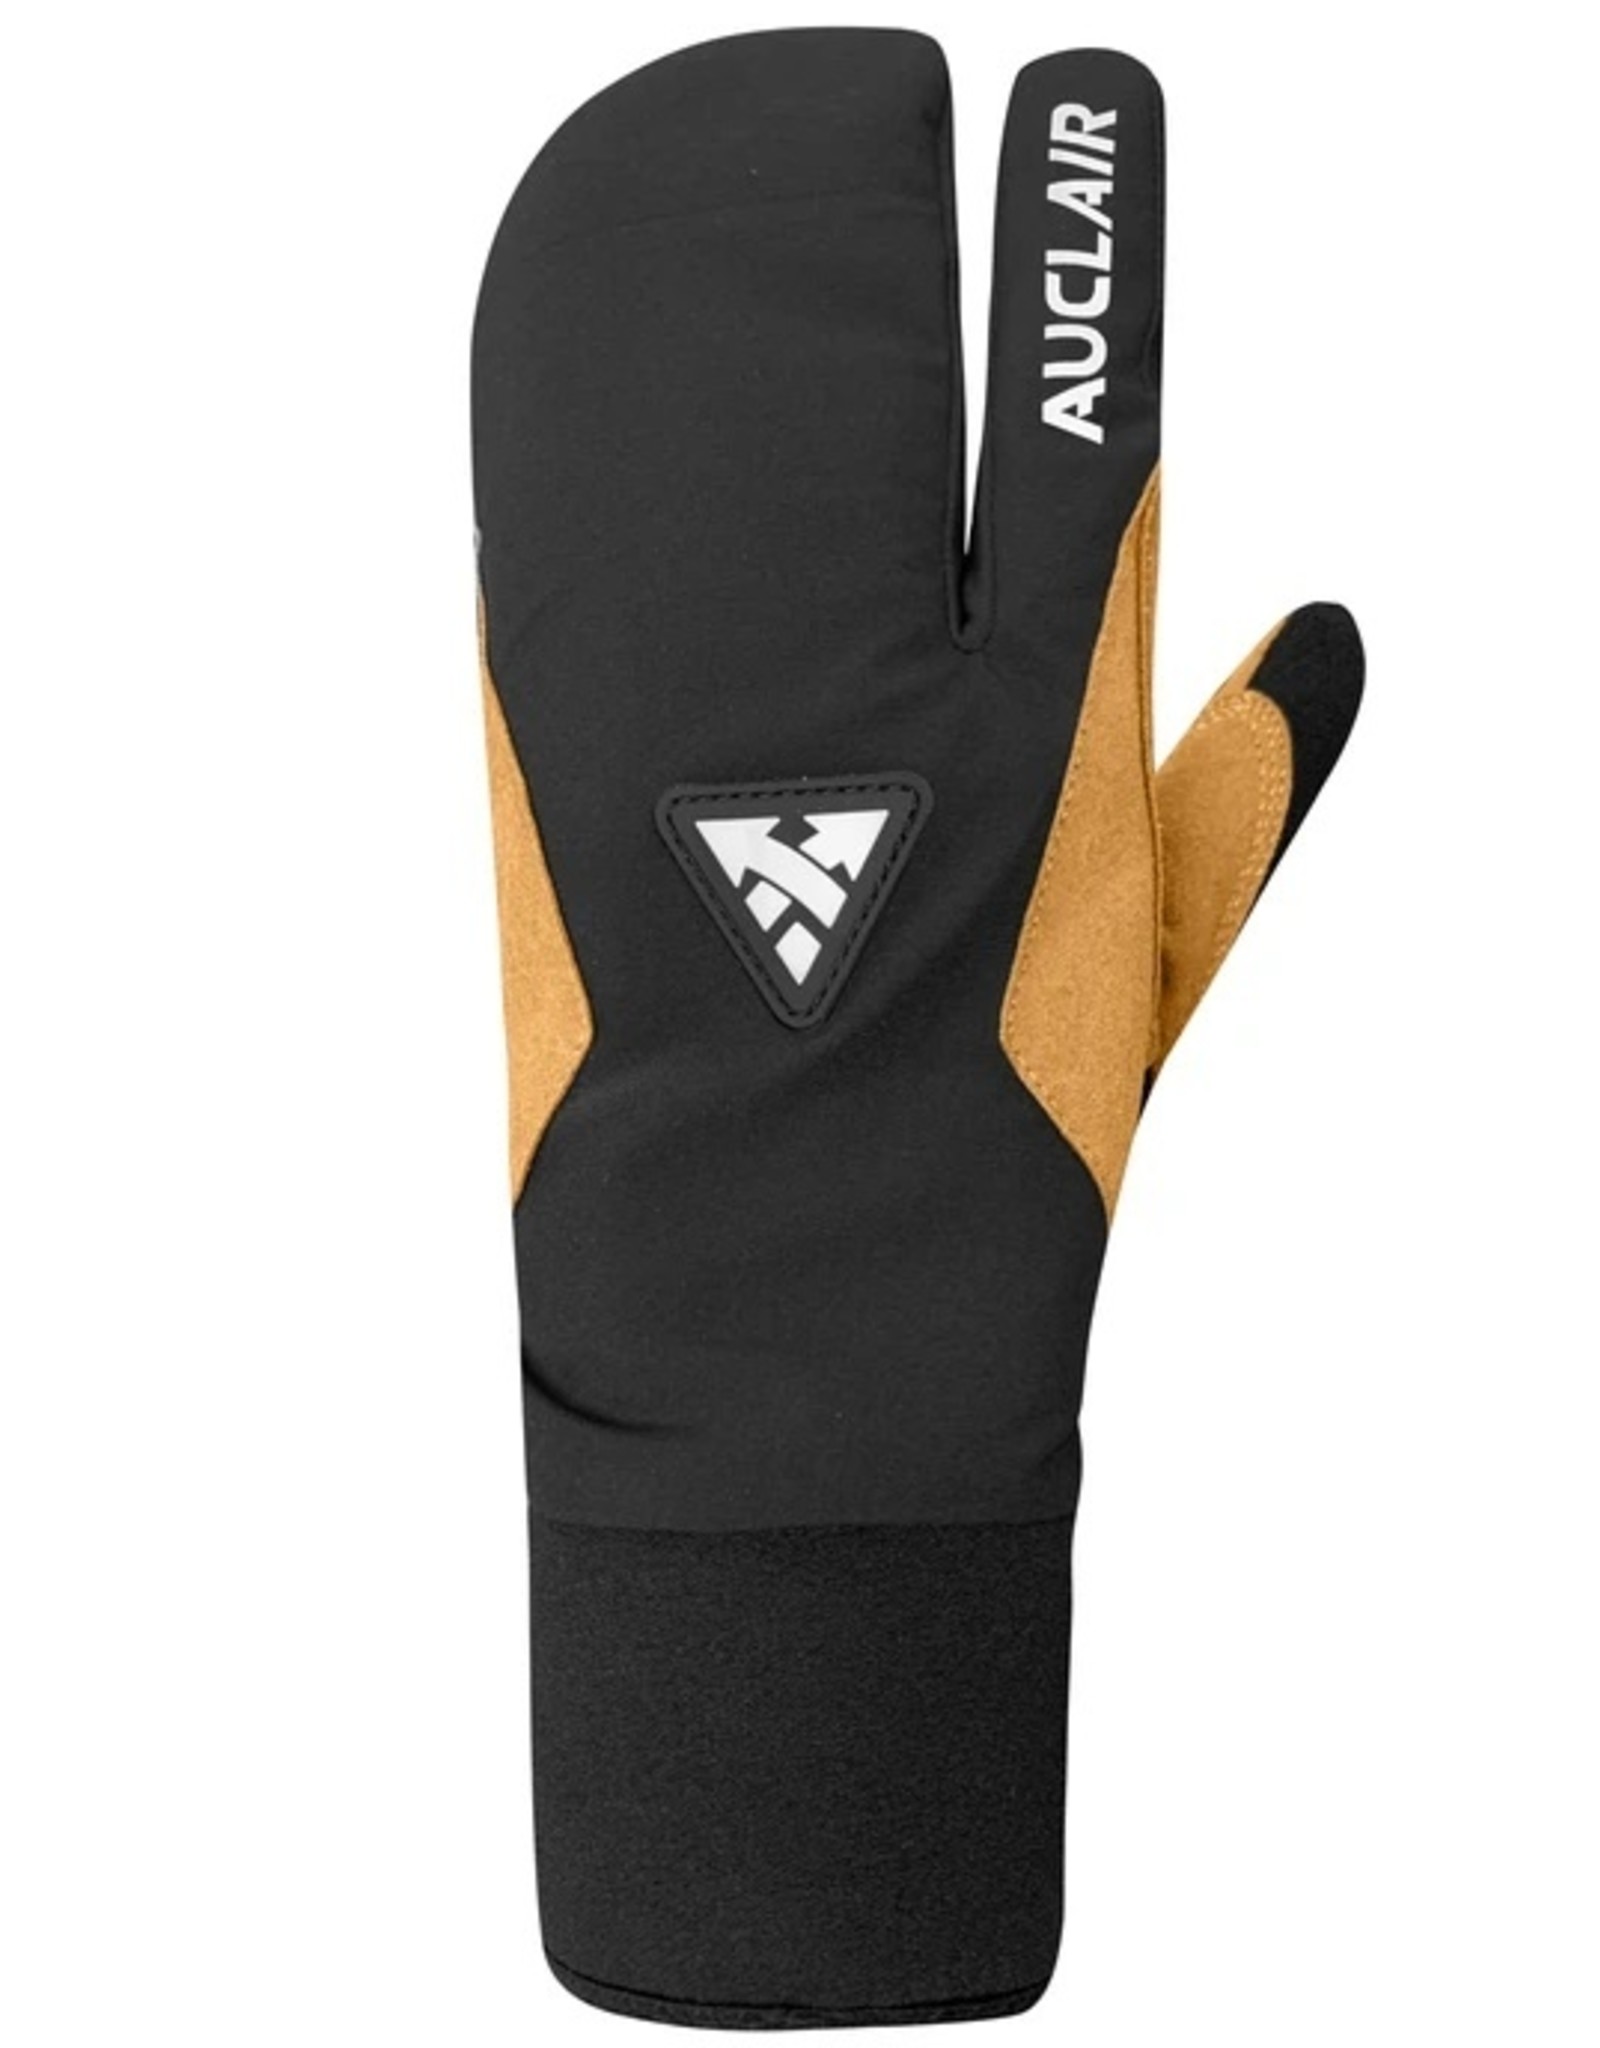 Auclair '22, AUCLAIR, Stellar 3-Finger Gloves, Men's, Black and Tan